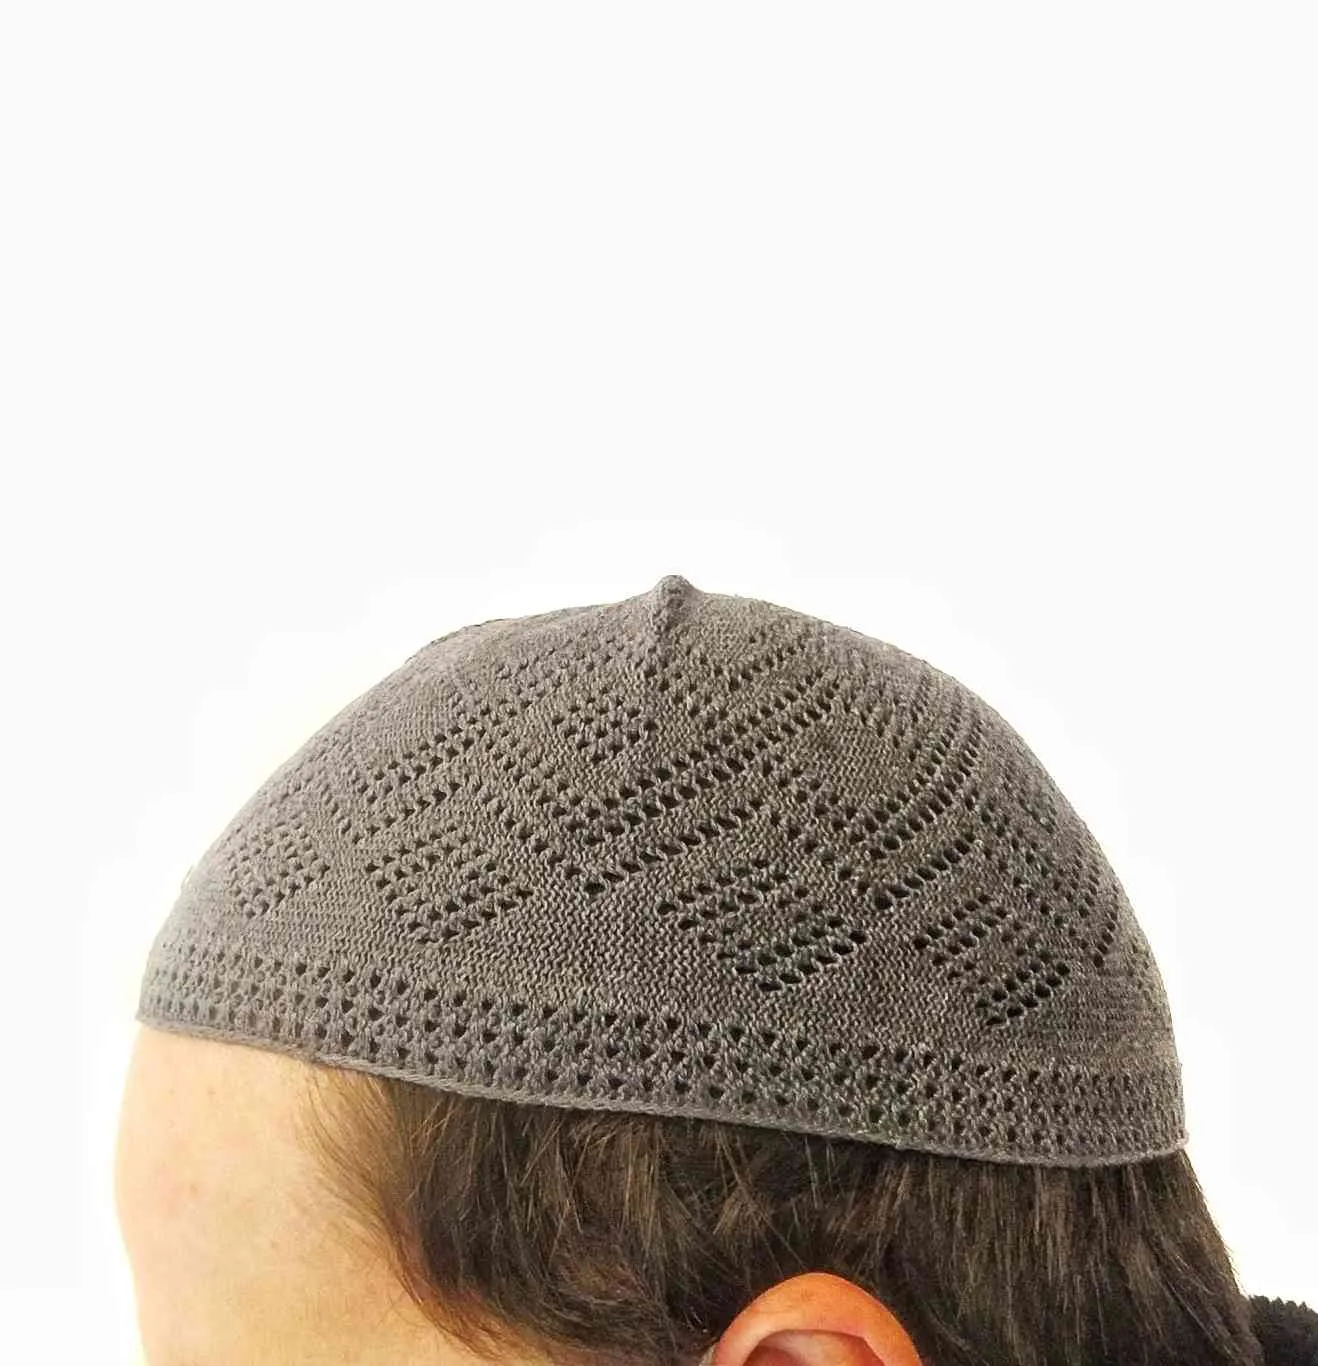 Männer Ganzes Coif -Baumwoll -Strickhüten Männer039s Schädelkappe muslimische islamische Gebetshut Kopf Solid Casual 8584348